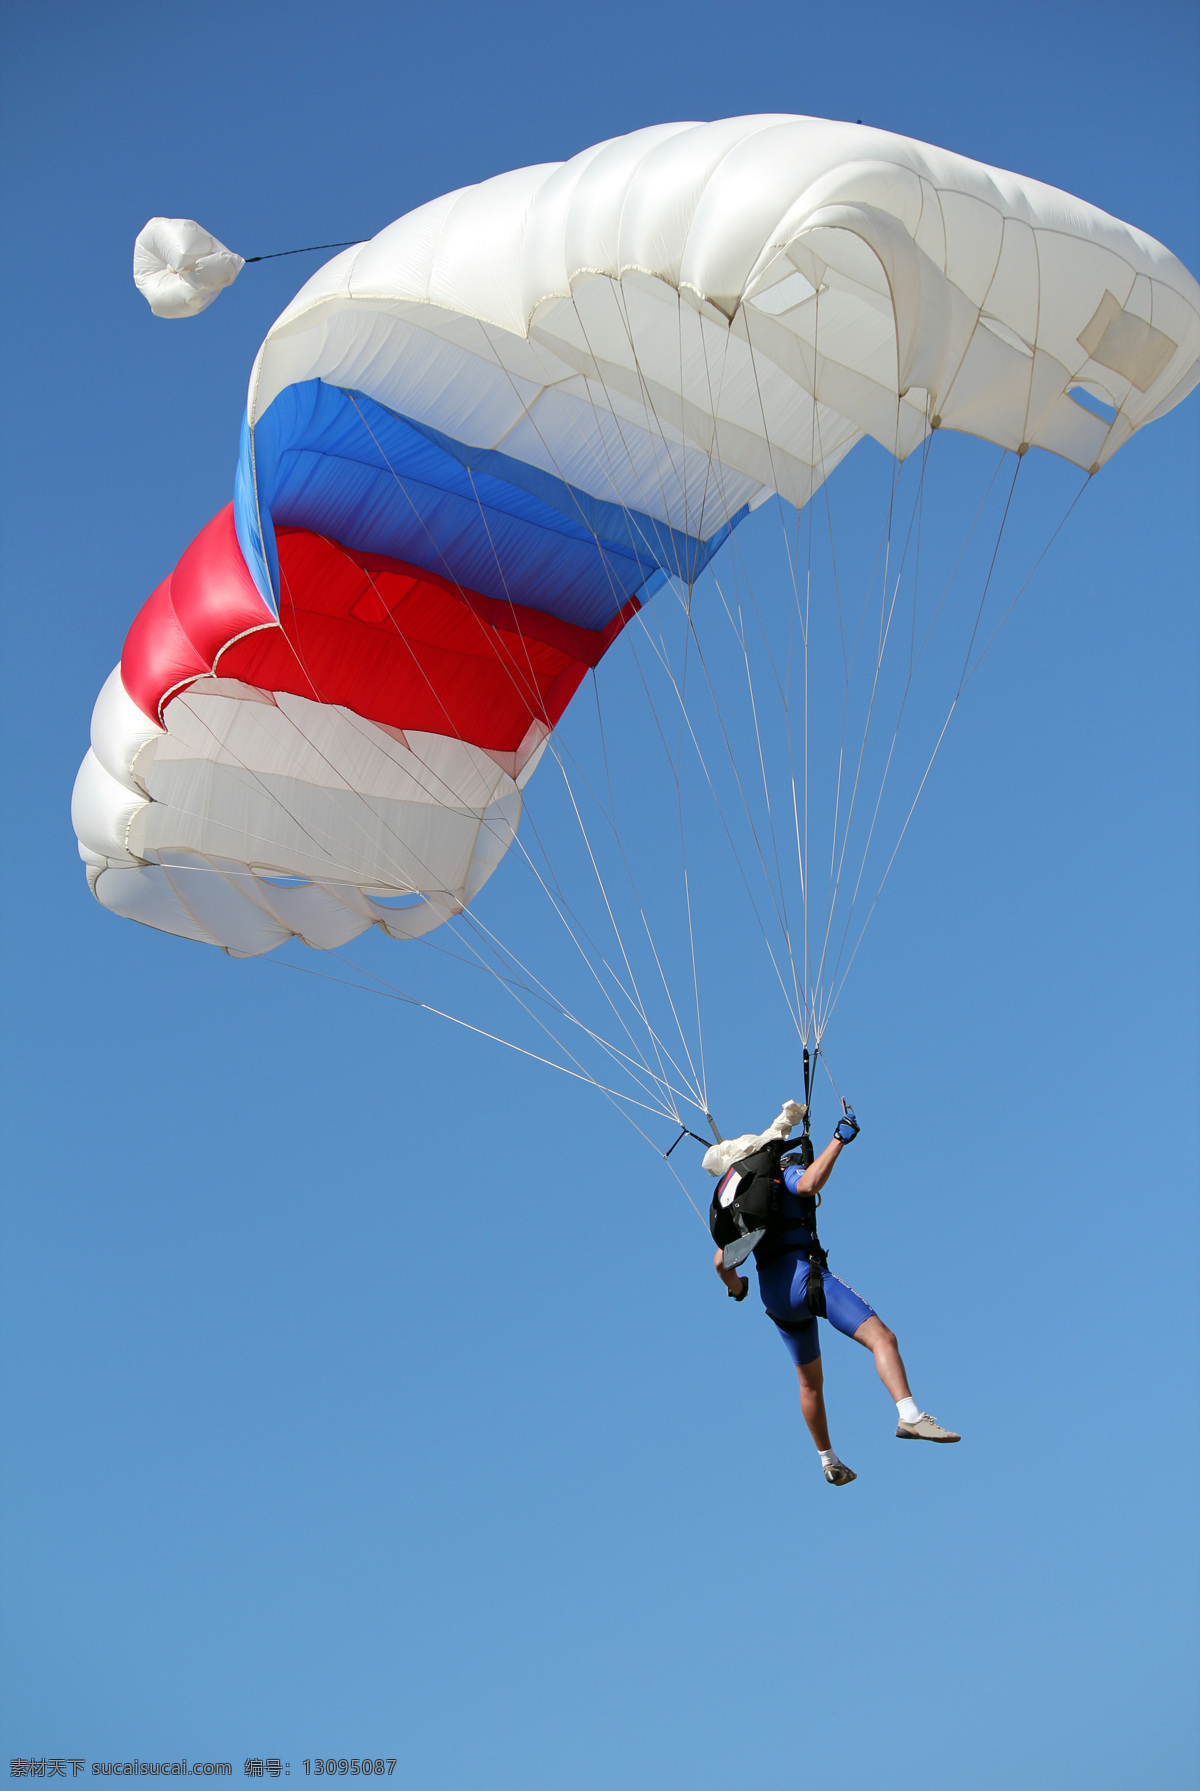 单人 跳伞 单人跳伞图片 空中 天空 运动 运动员 降落伞 体育运动 生活百科 蓝色